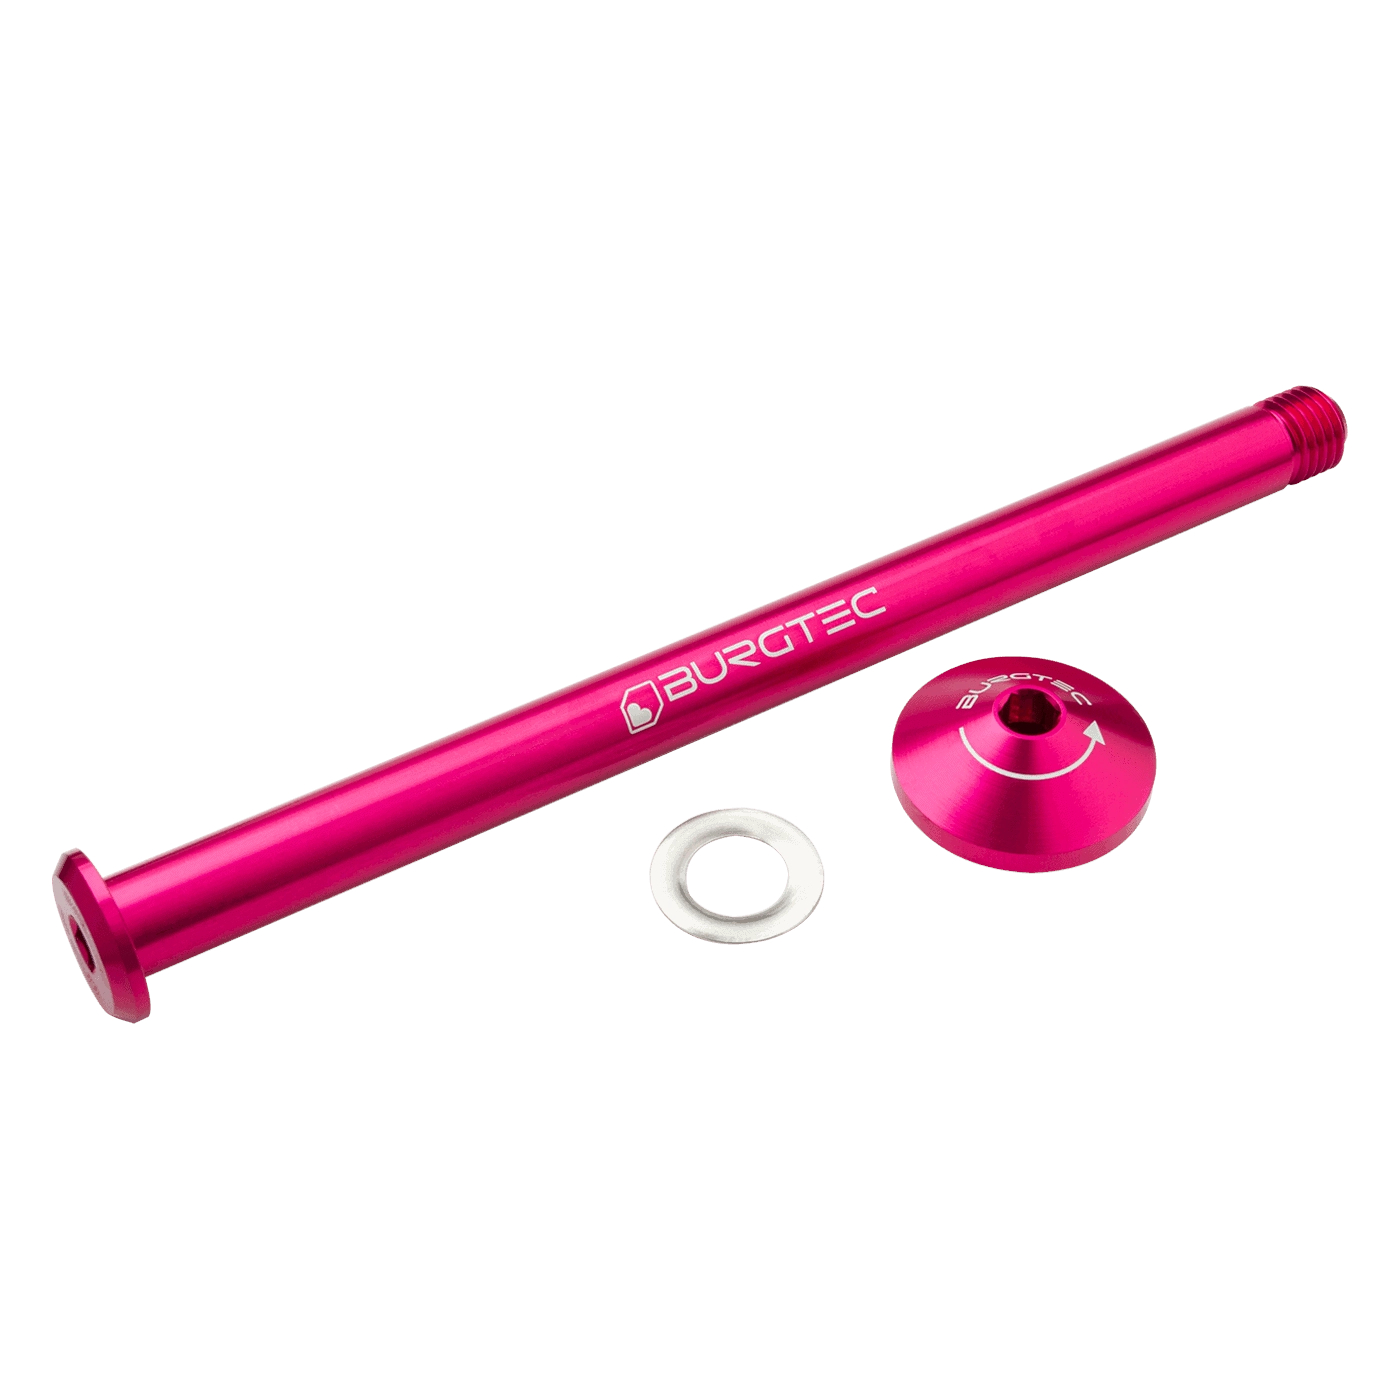 Produktbild von Burgtec Steckachse - 12x148mm Boost - für Yeti Ausfallenden / 171mm - Toxic Barbie Pink